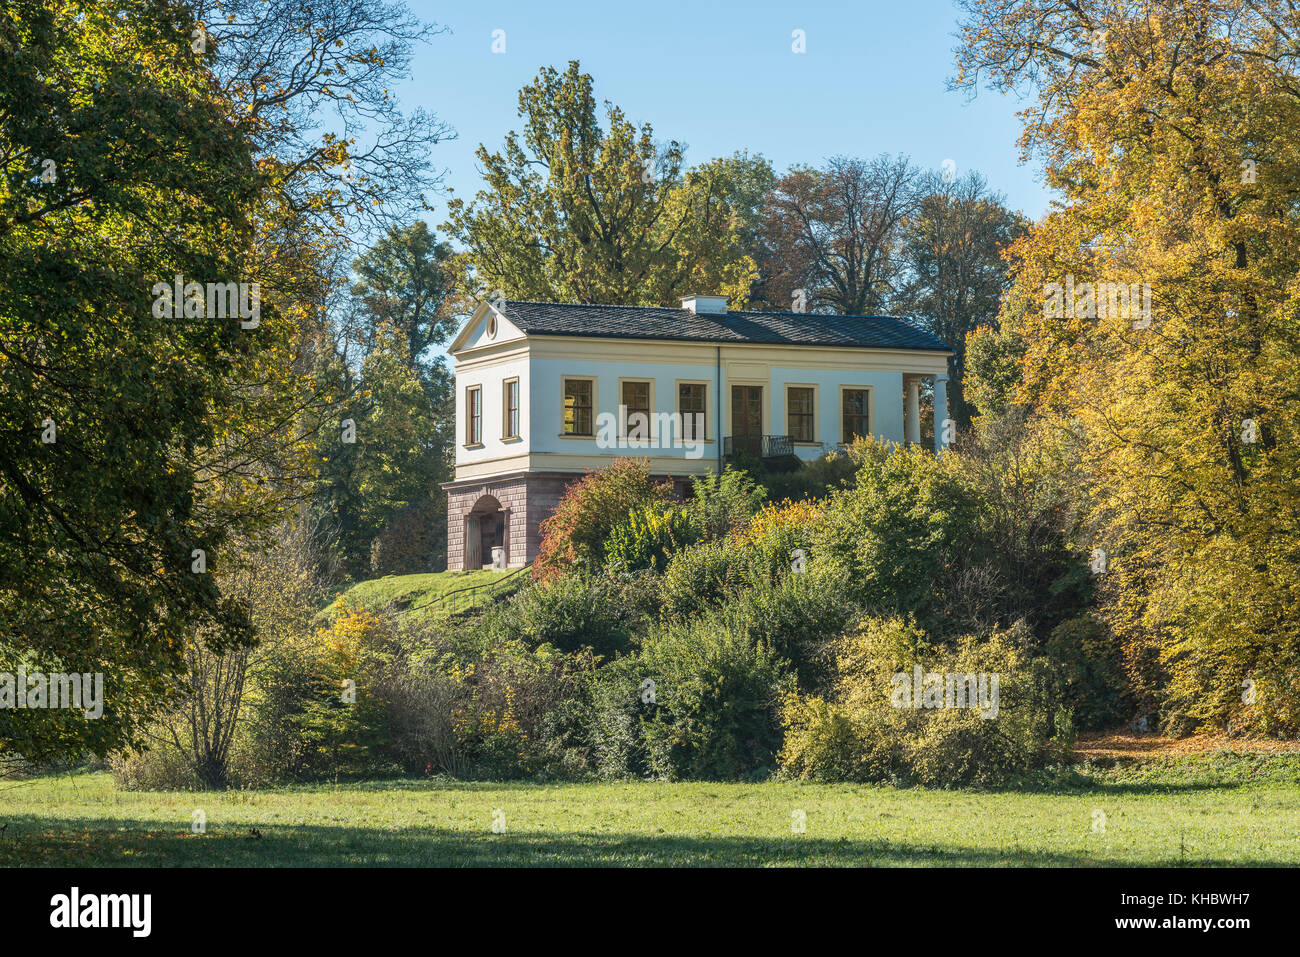 Maison romaine dans le parc de l'ILM, site du patrimoine culturel mondial de l'UNESCO, Weimar, Weimar, Thuringe, Allemagne Banque D'Images